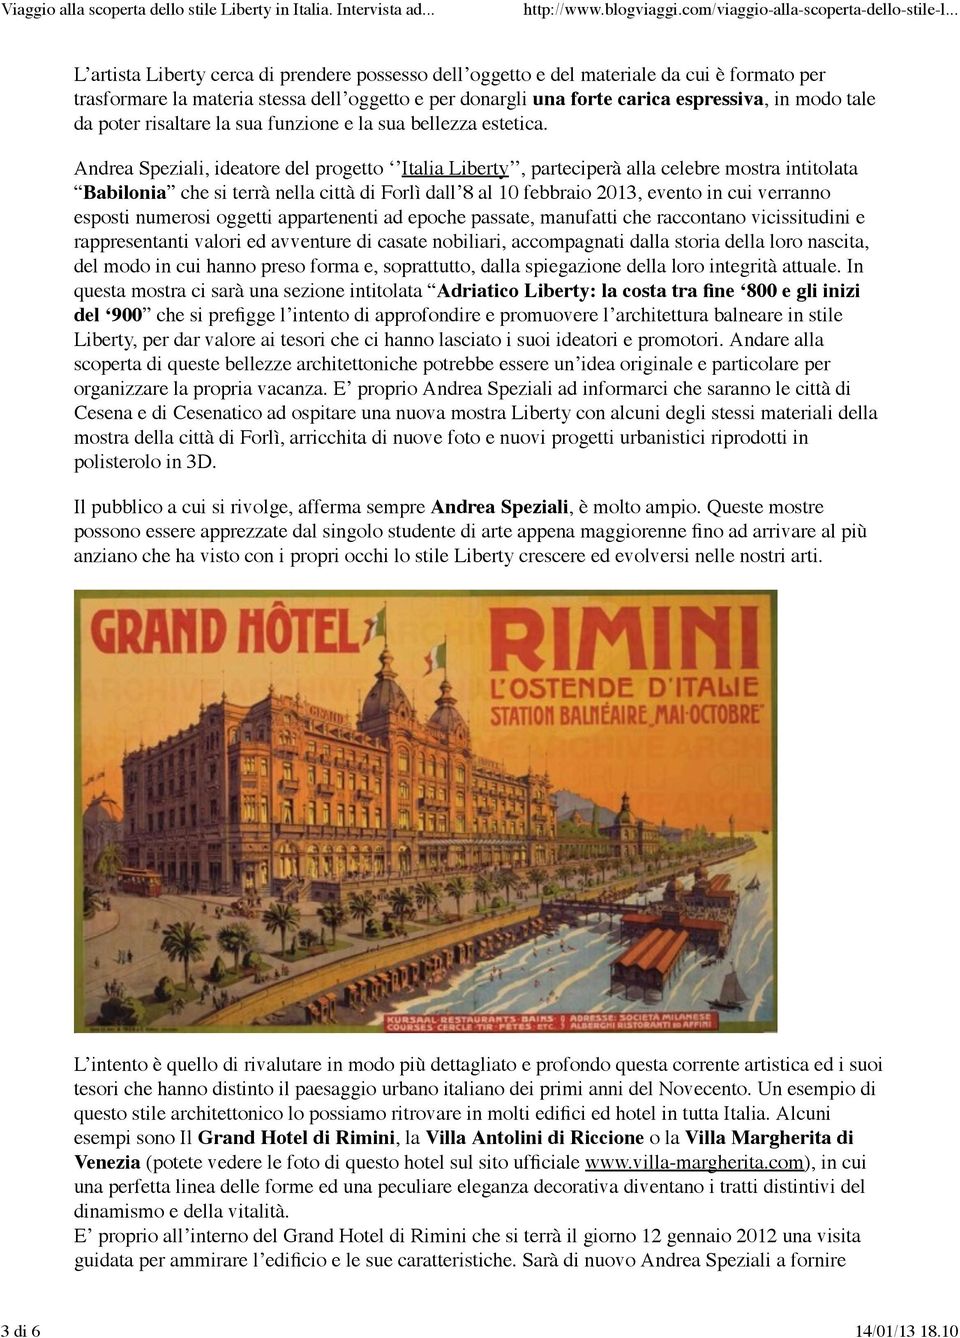 Andrea Speziali, ideatore del progetto Italia Liberty, parteciperà alla celebre mostra intitolata Babilonia che si terrà nella città di Forlì dall 8 al 10 febbraio 2013, evento in cui verranno